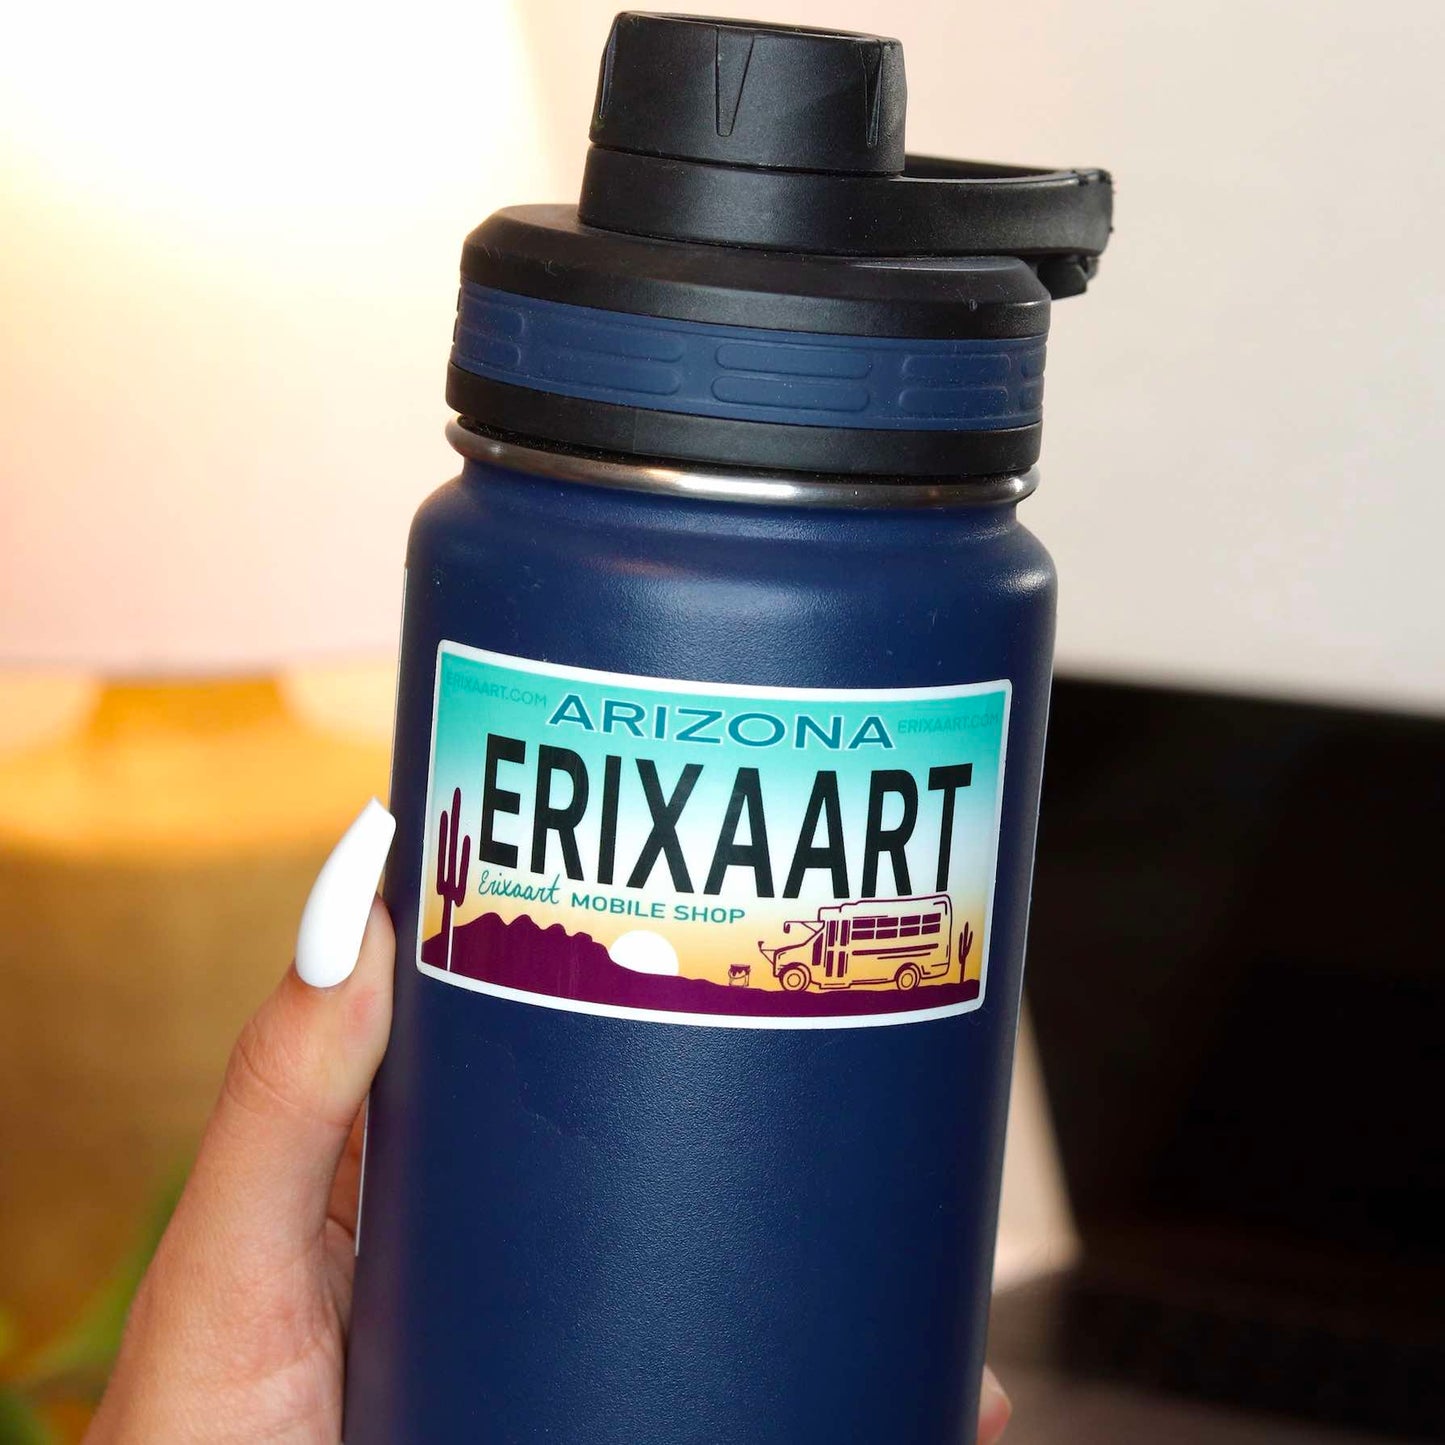 "Erixaart" Glossy Sticker